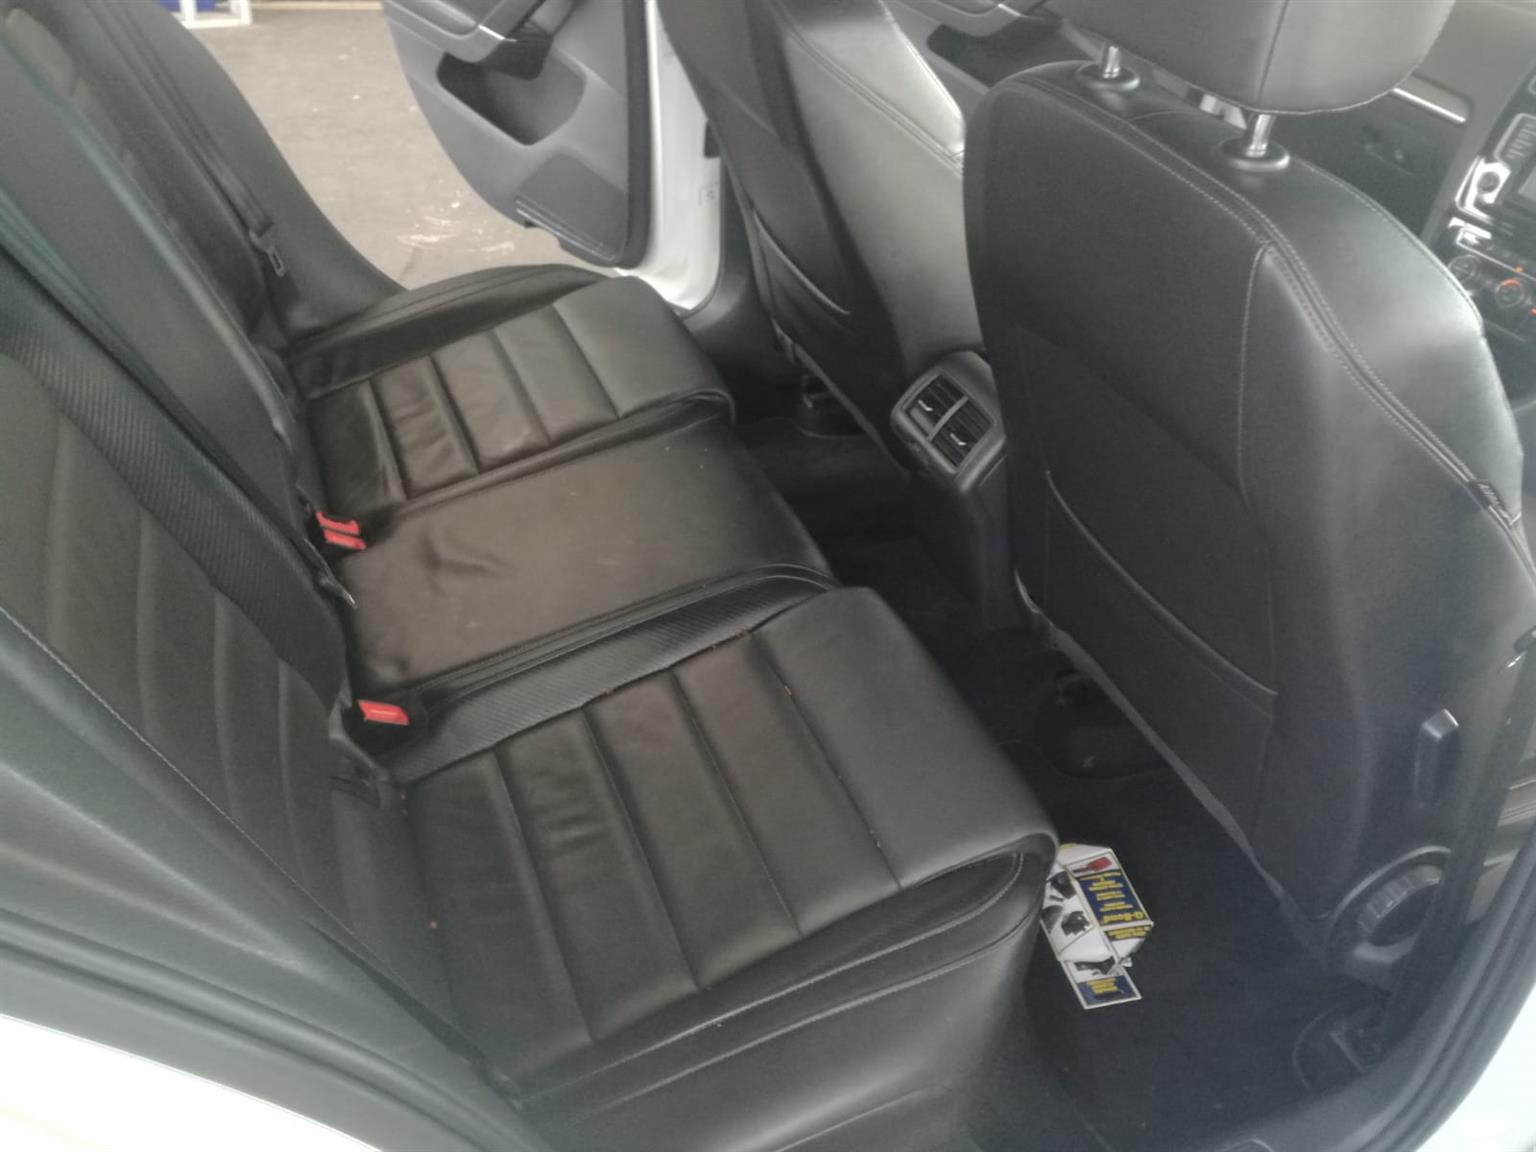 2014 VW Golf SV 2.0TDI Comfortline auto